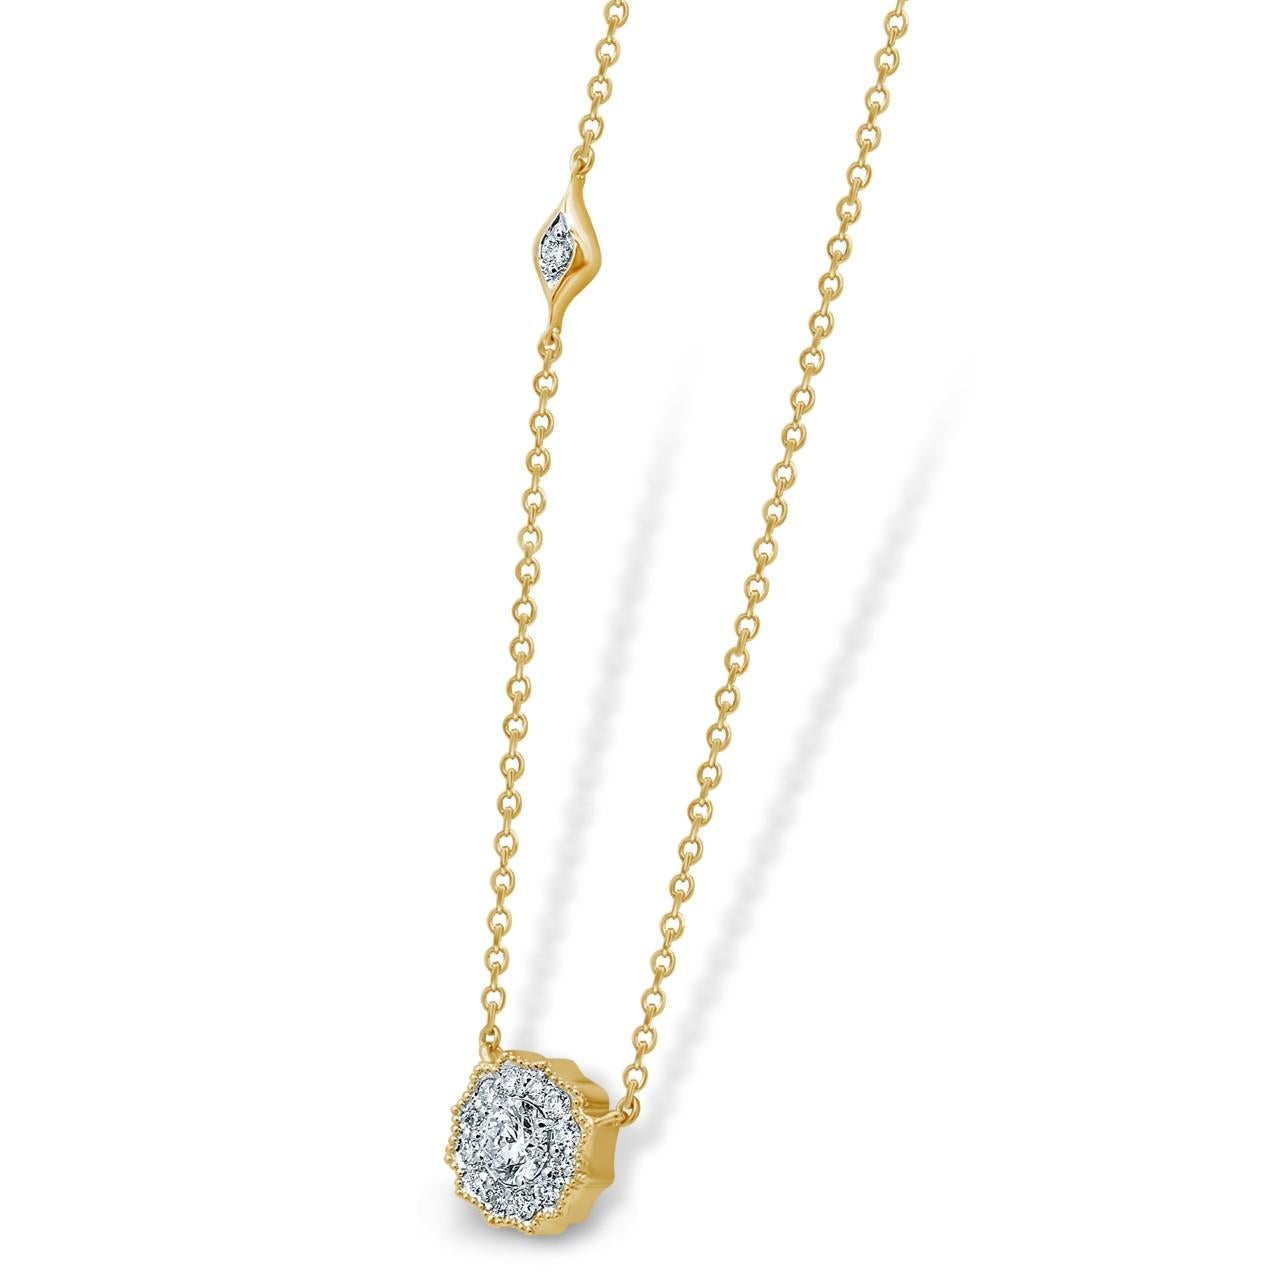 Diese Anhänger-Halskette aus 18-karätigem Gold ist von Hand mit 0,48 Karat funkelnden Diamanten an der 16-Zoll-Kette besetzt. Erhältlich in Rosé-, Gelb- und Weißgold.  Siehe andere Stücke aus der Riviera-Kollektion.

FOLGEN  MEGHNA JEWELS